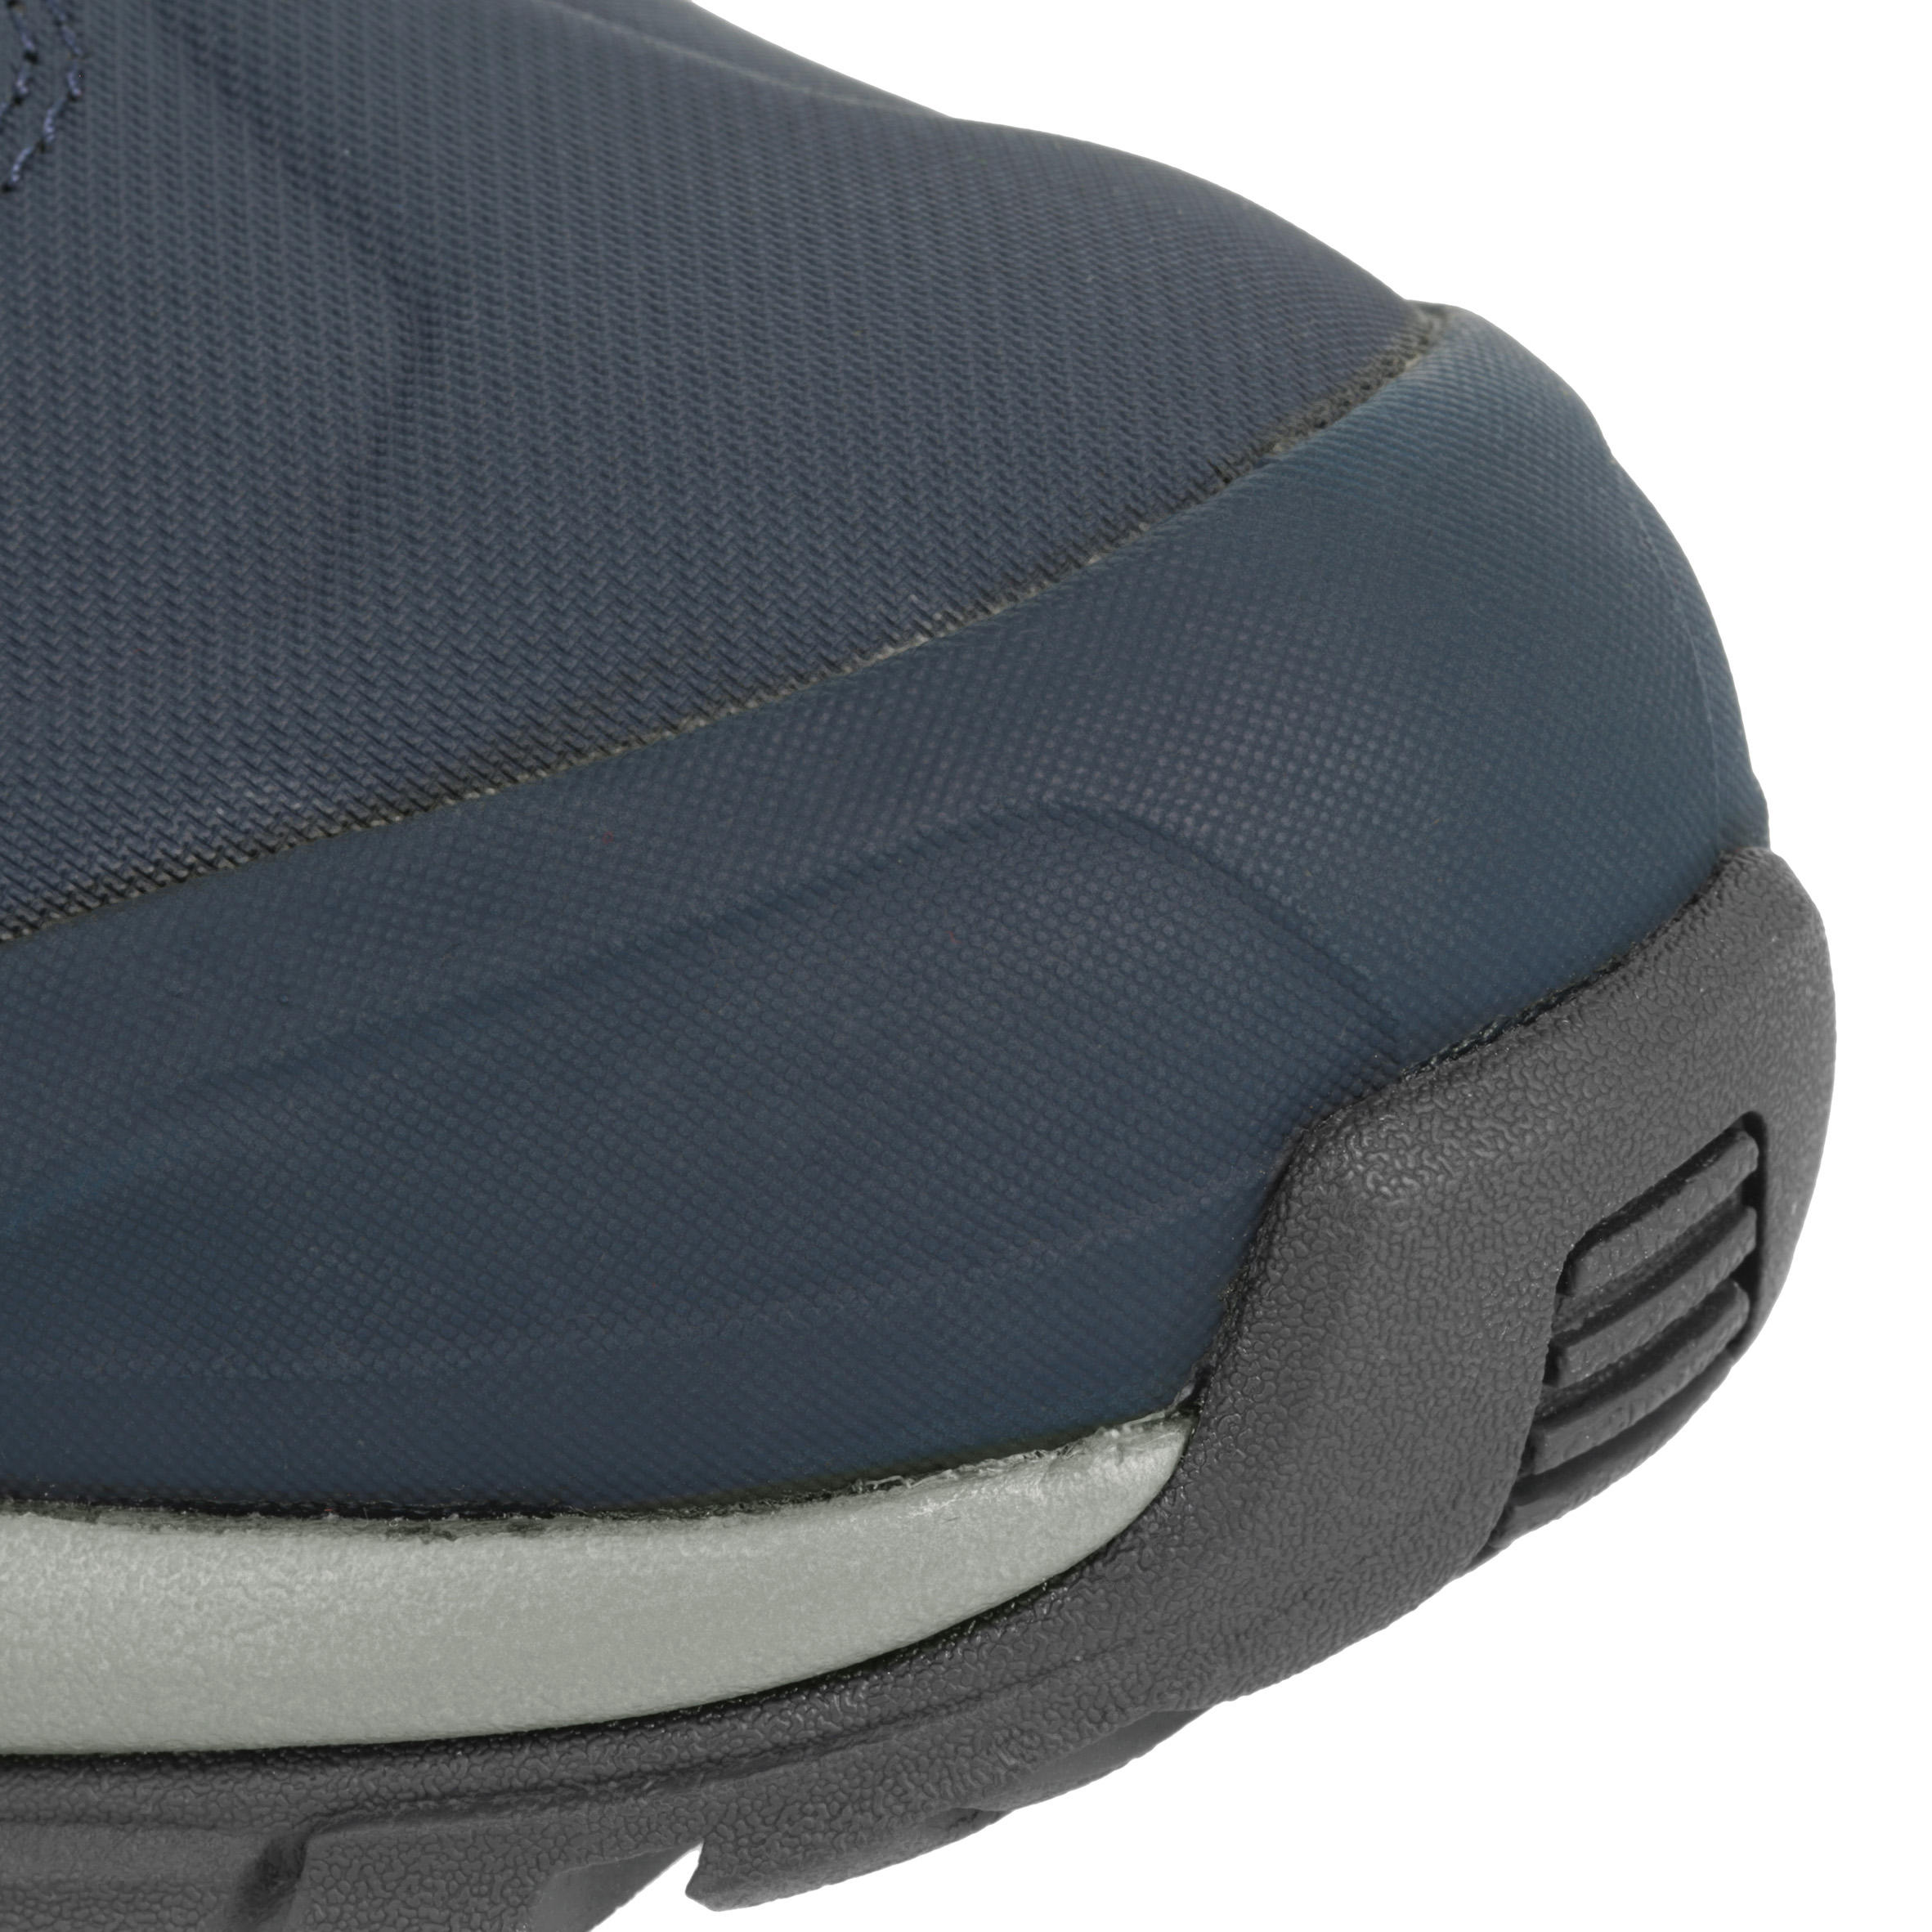 Forclaz 500 Warm Waterproof Men's Hiking Boots - Blue 4/15